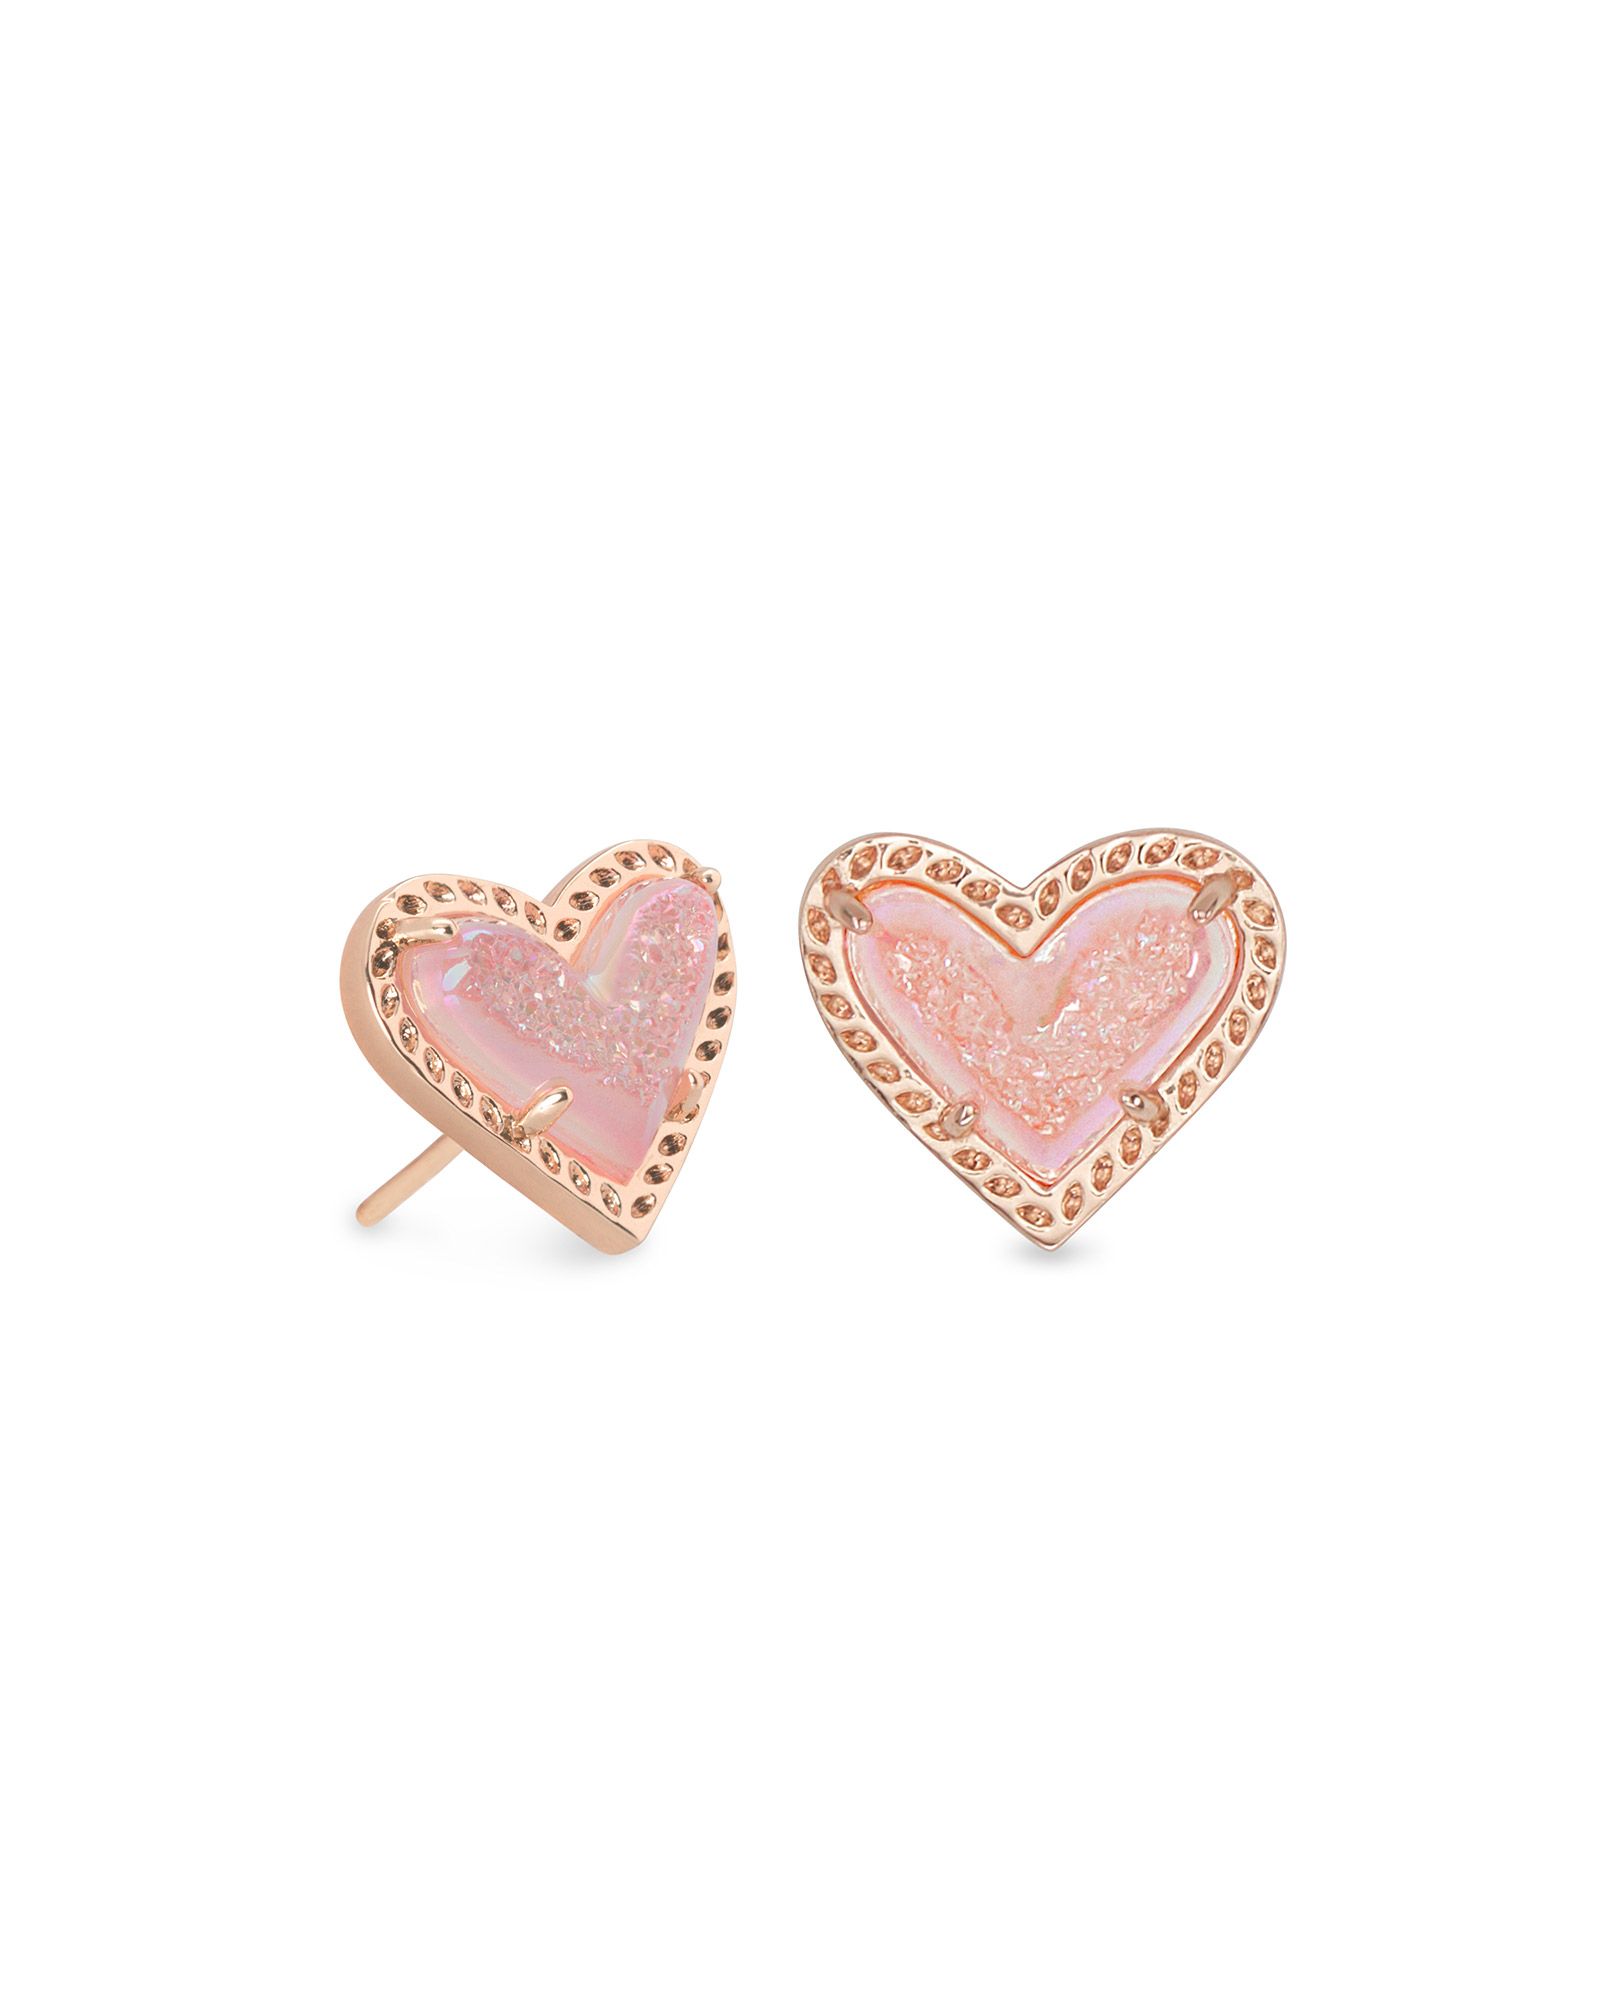 Ari Heart Rose Gold Stud Earrings in Pink Drusy | Kendra Scott